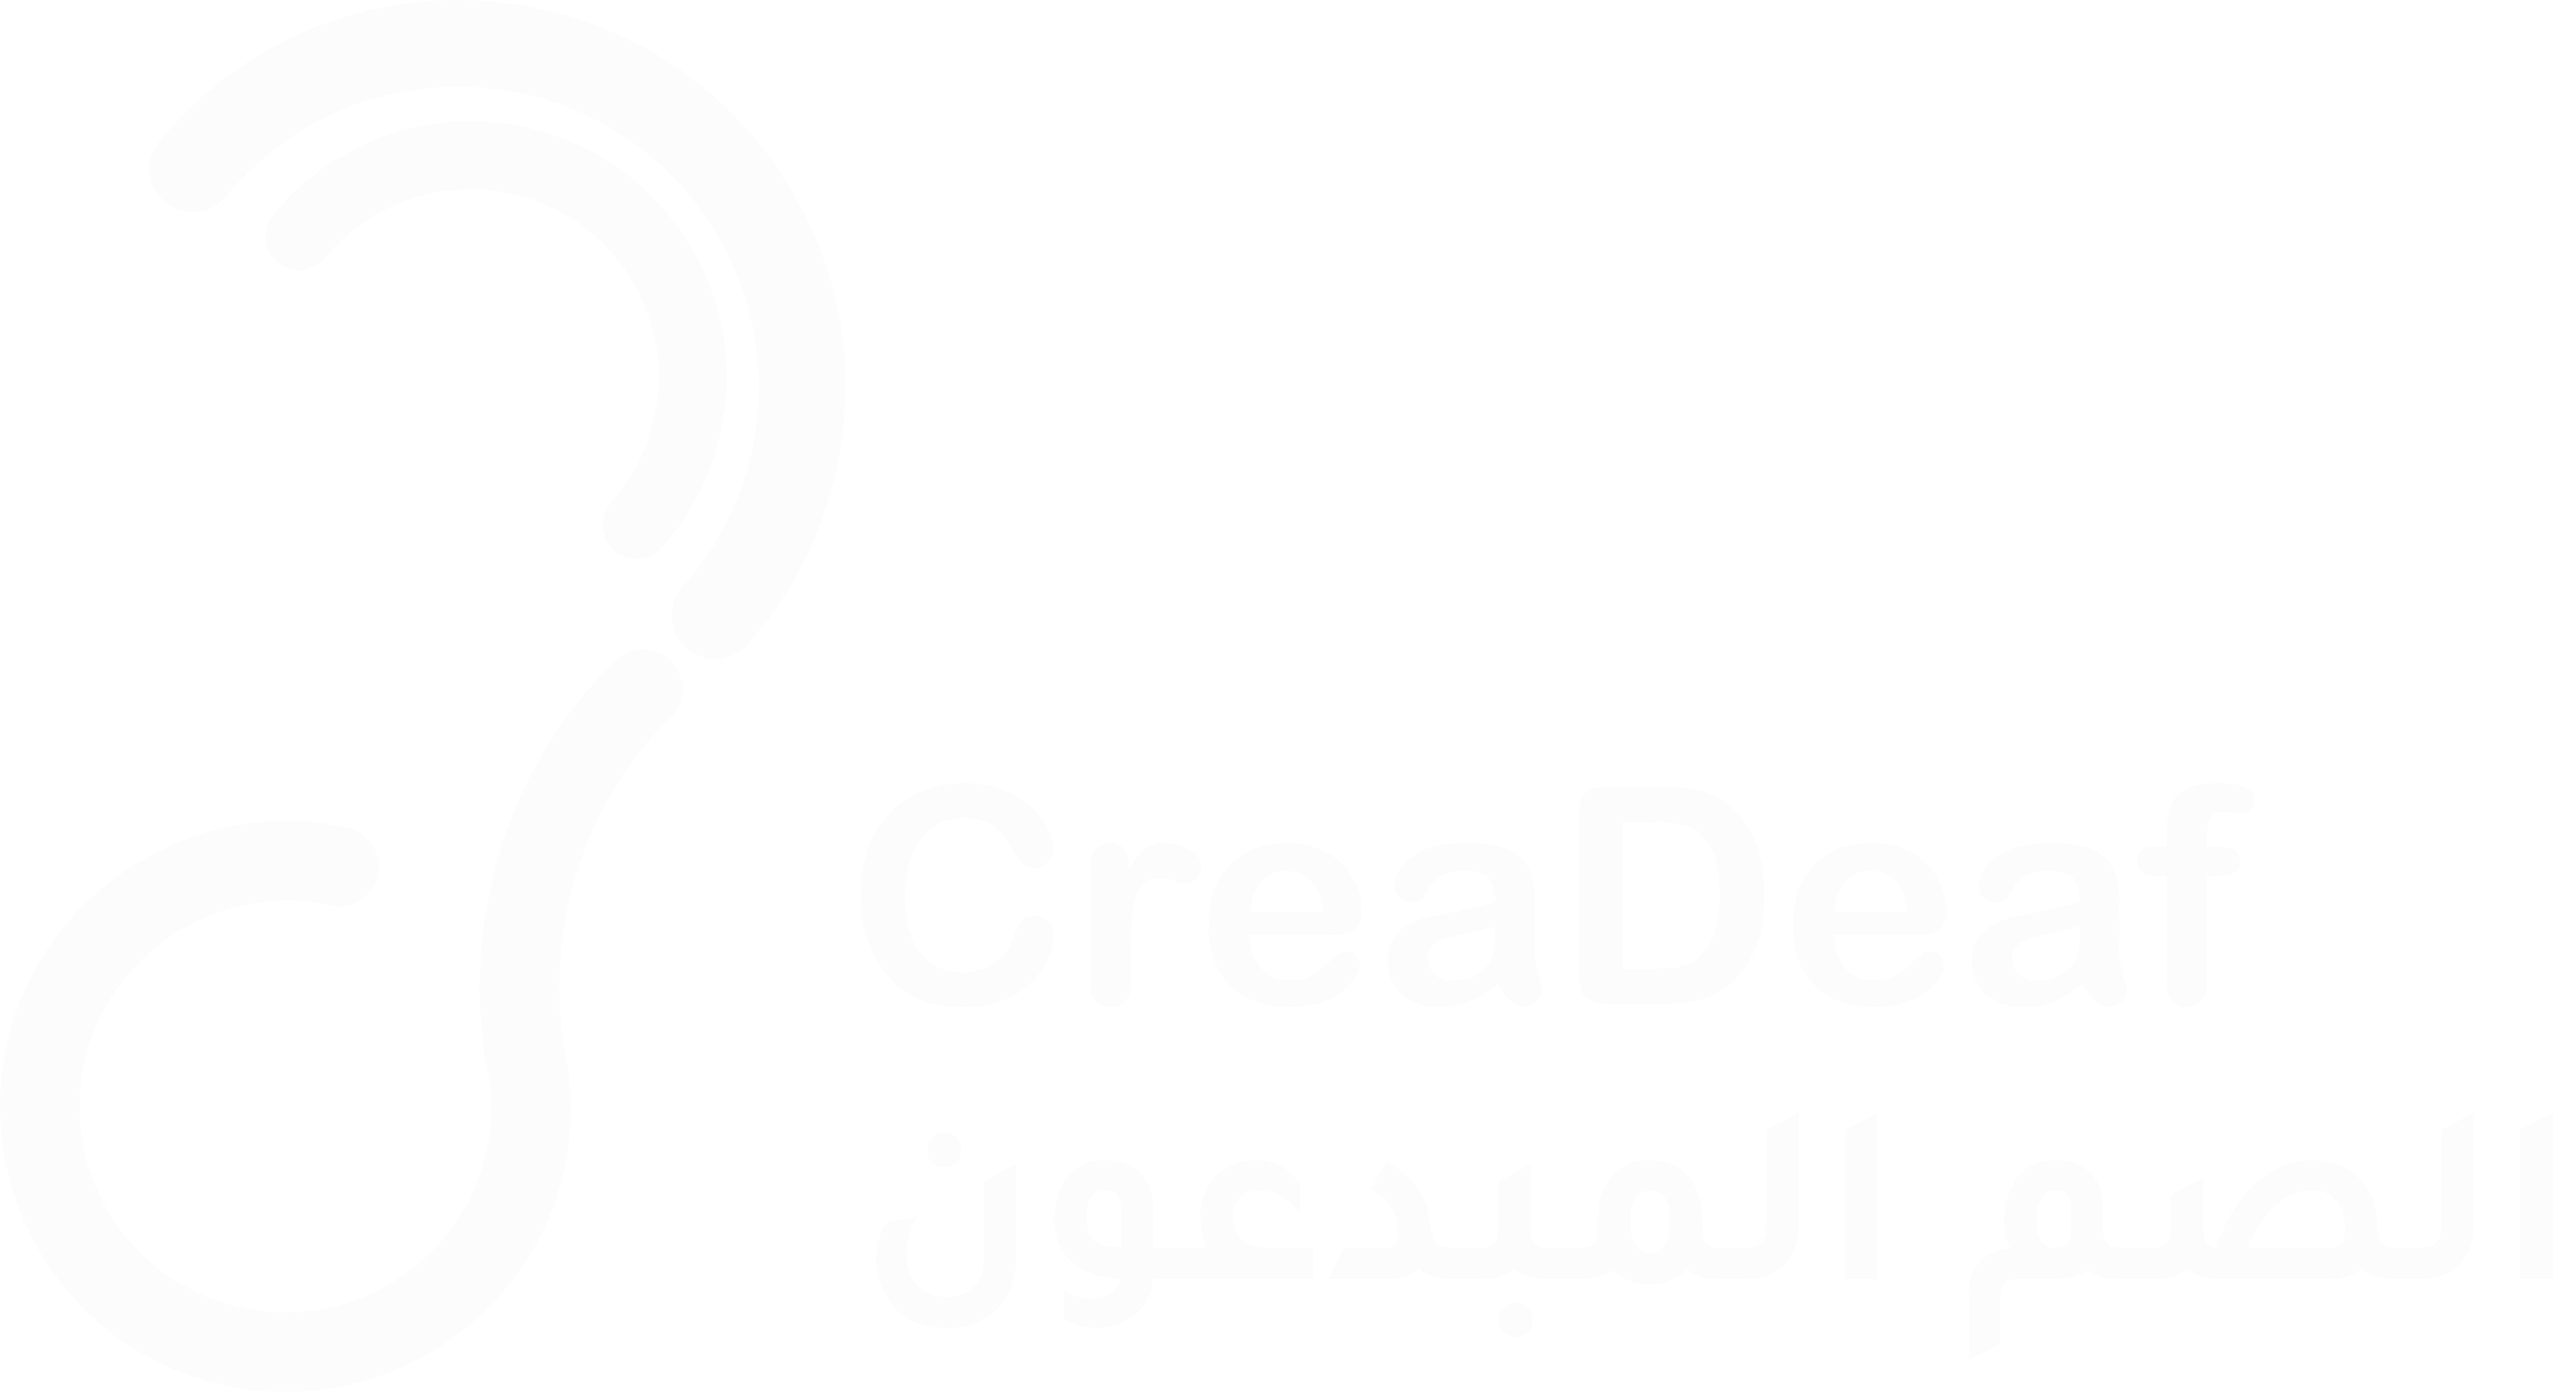 Creadeaf